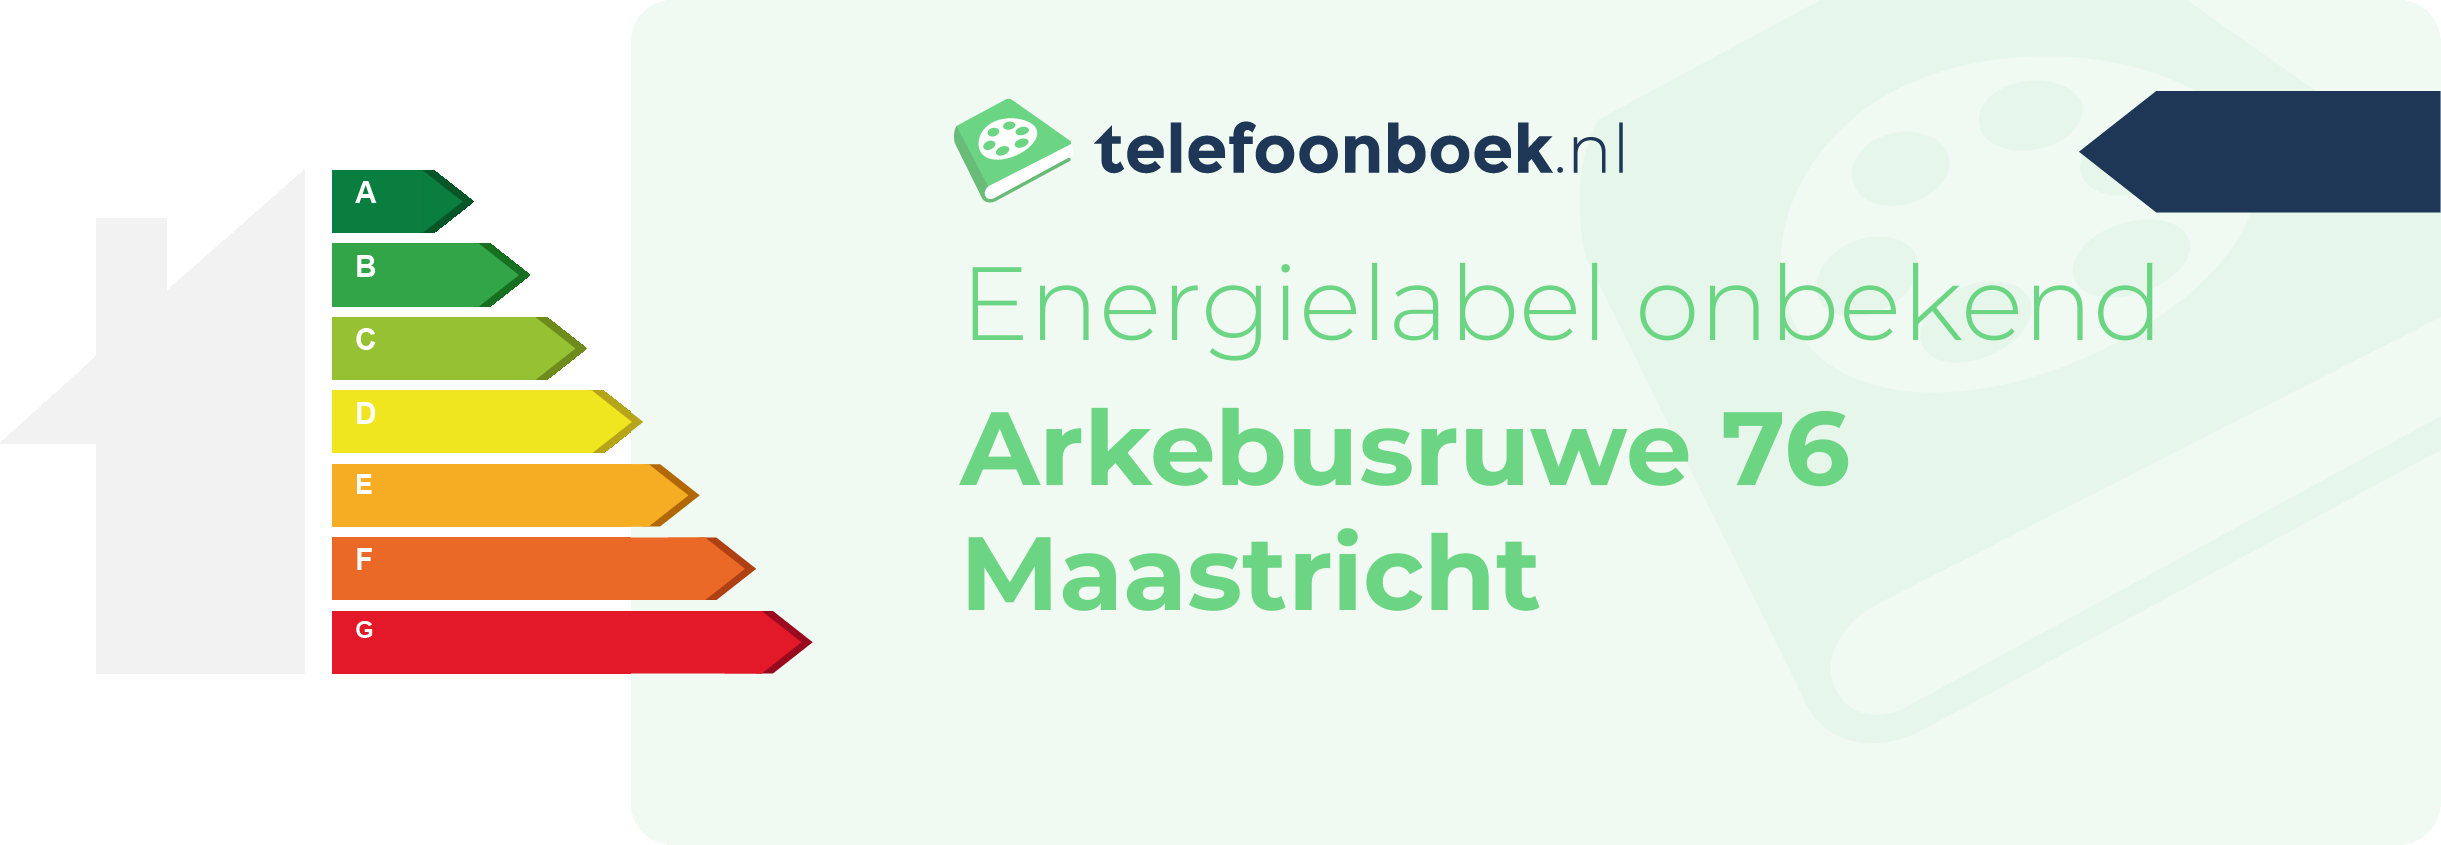 Energielabel Arkebusruwe 76 Maastricht